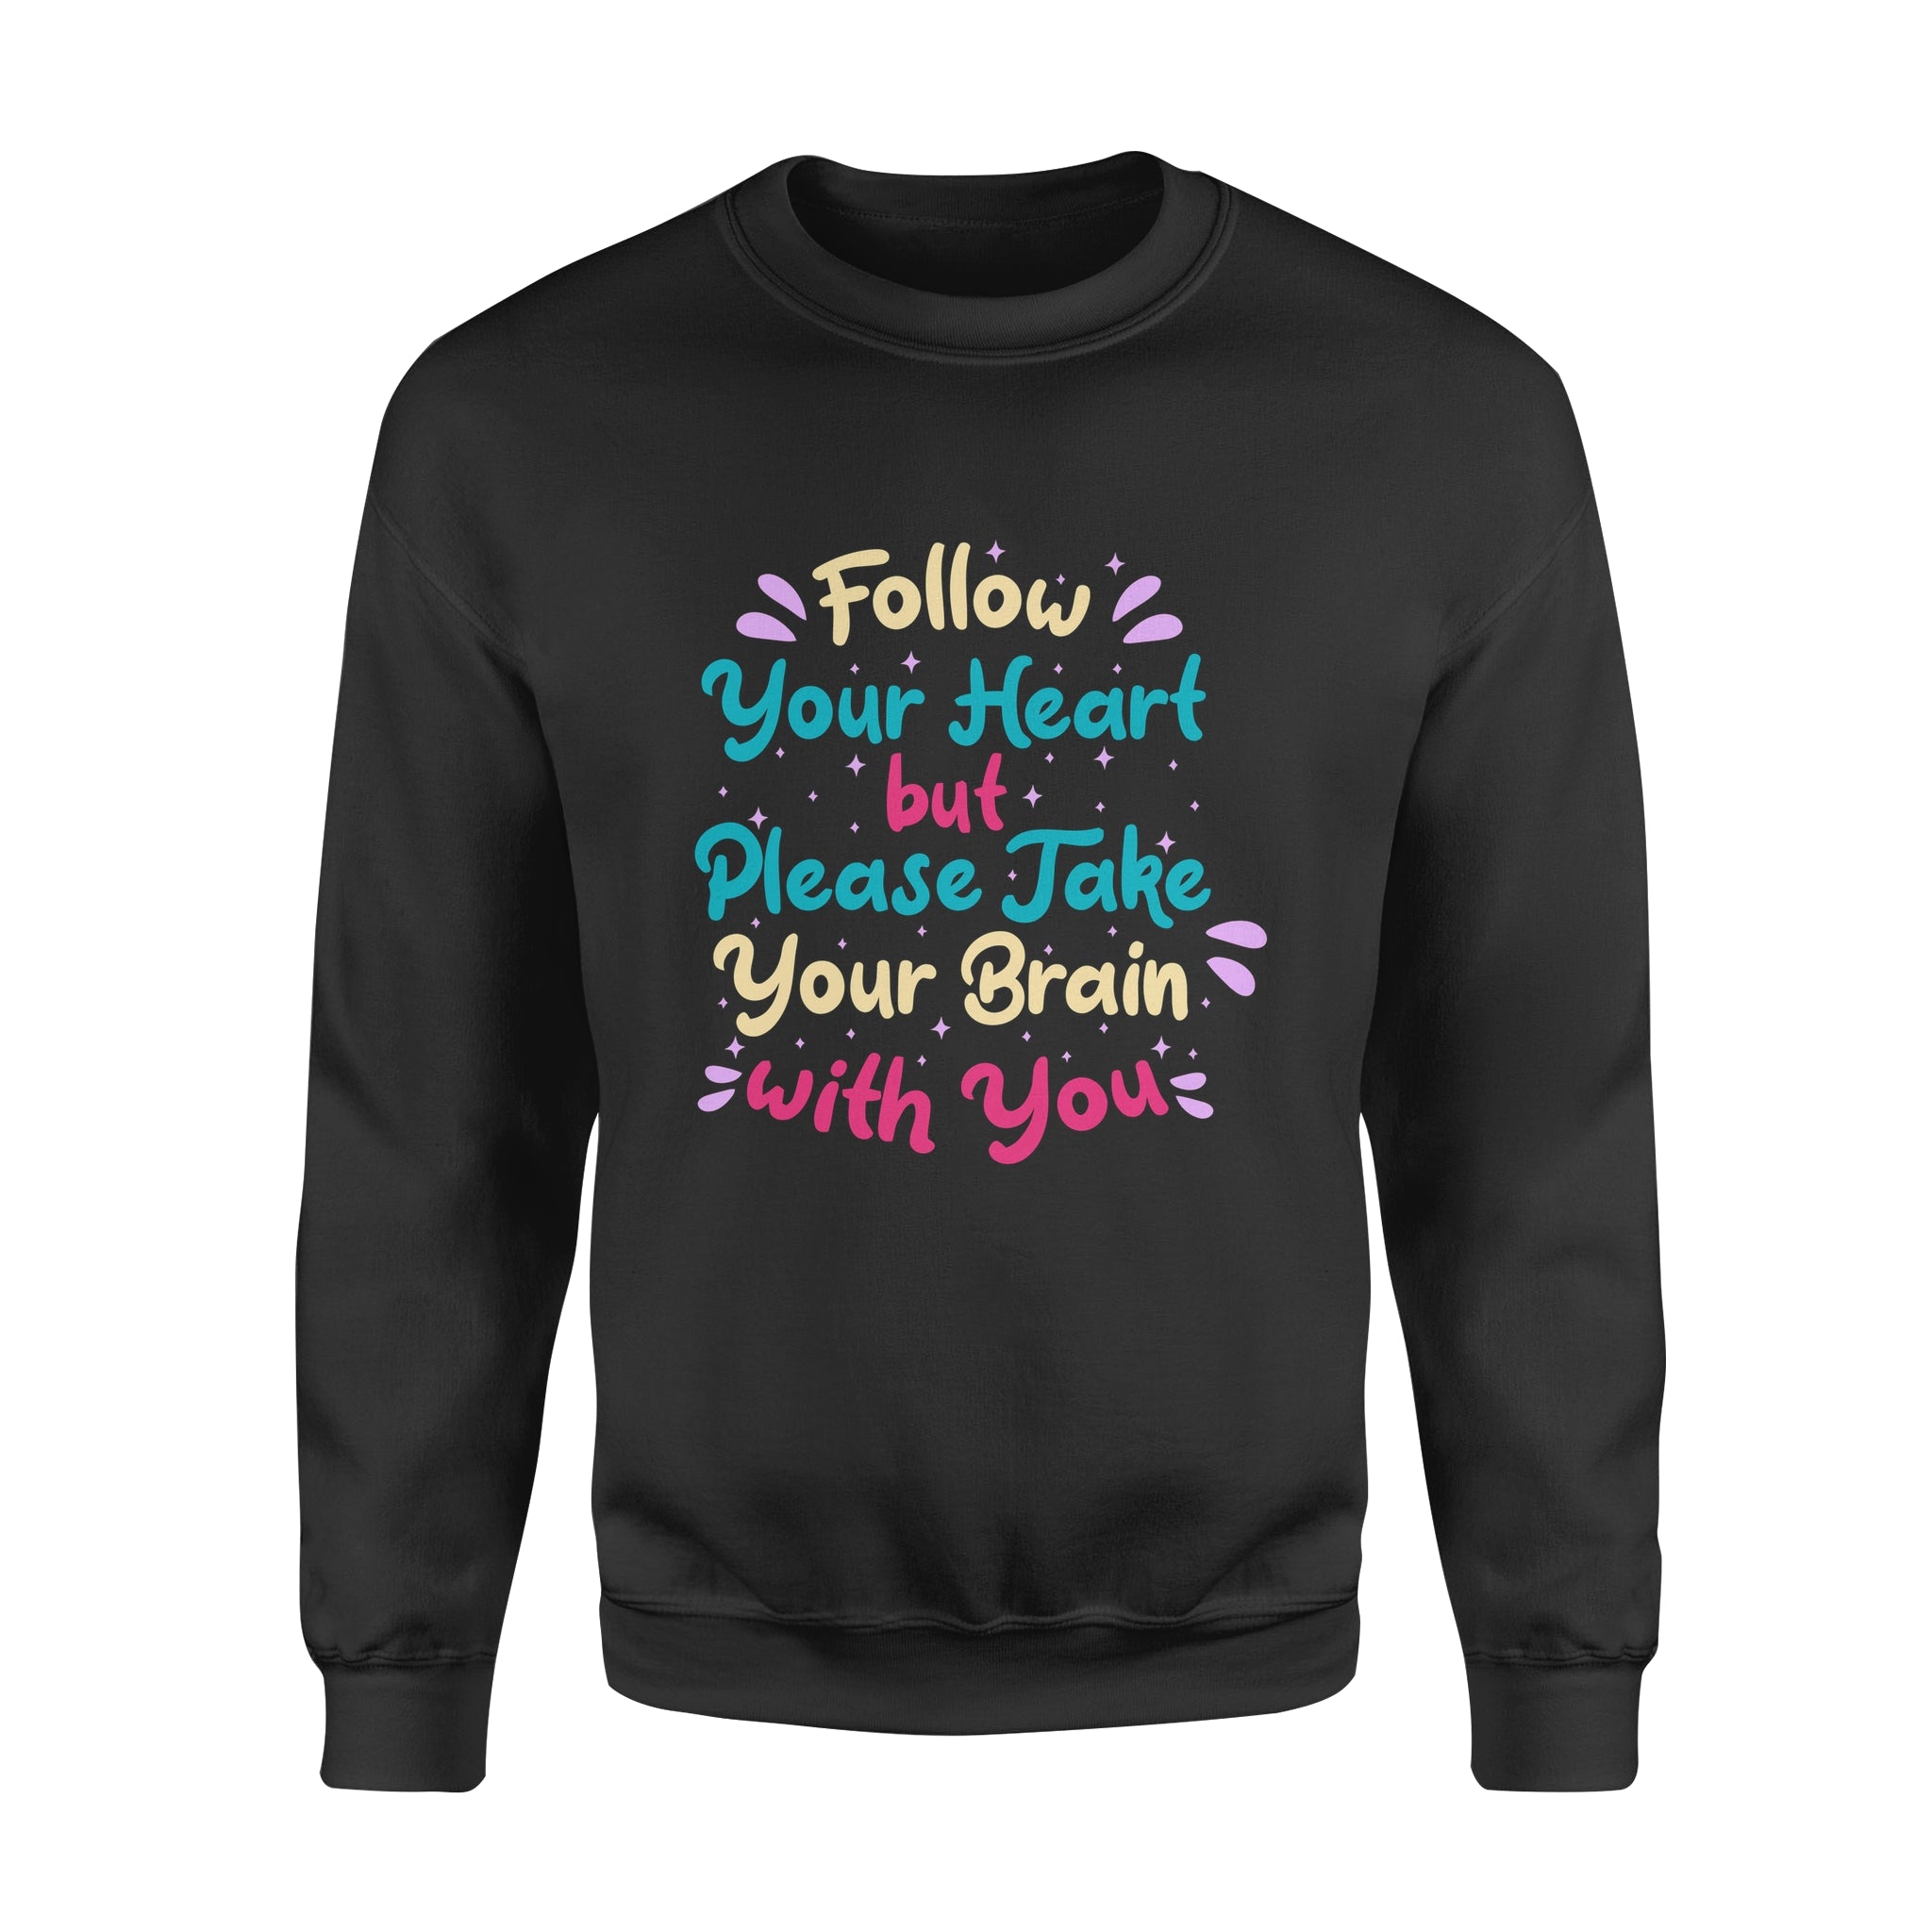 Follow You Heart but Please Take Your Brain with You - Fleece Sweatshirt